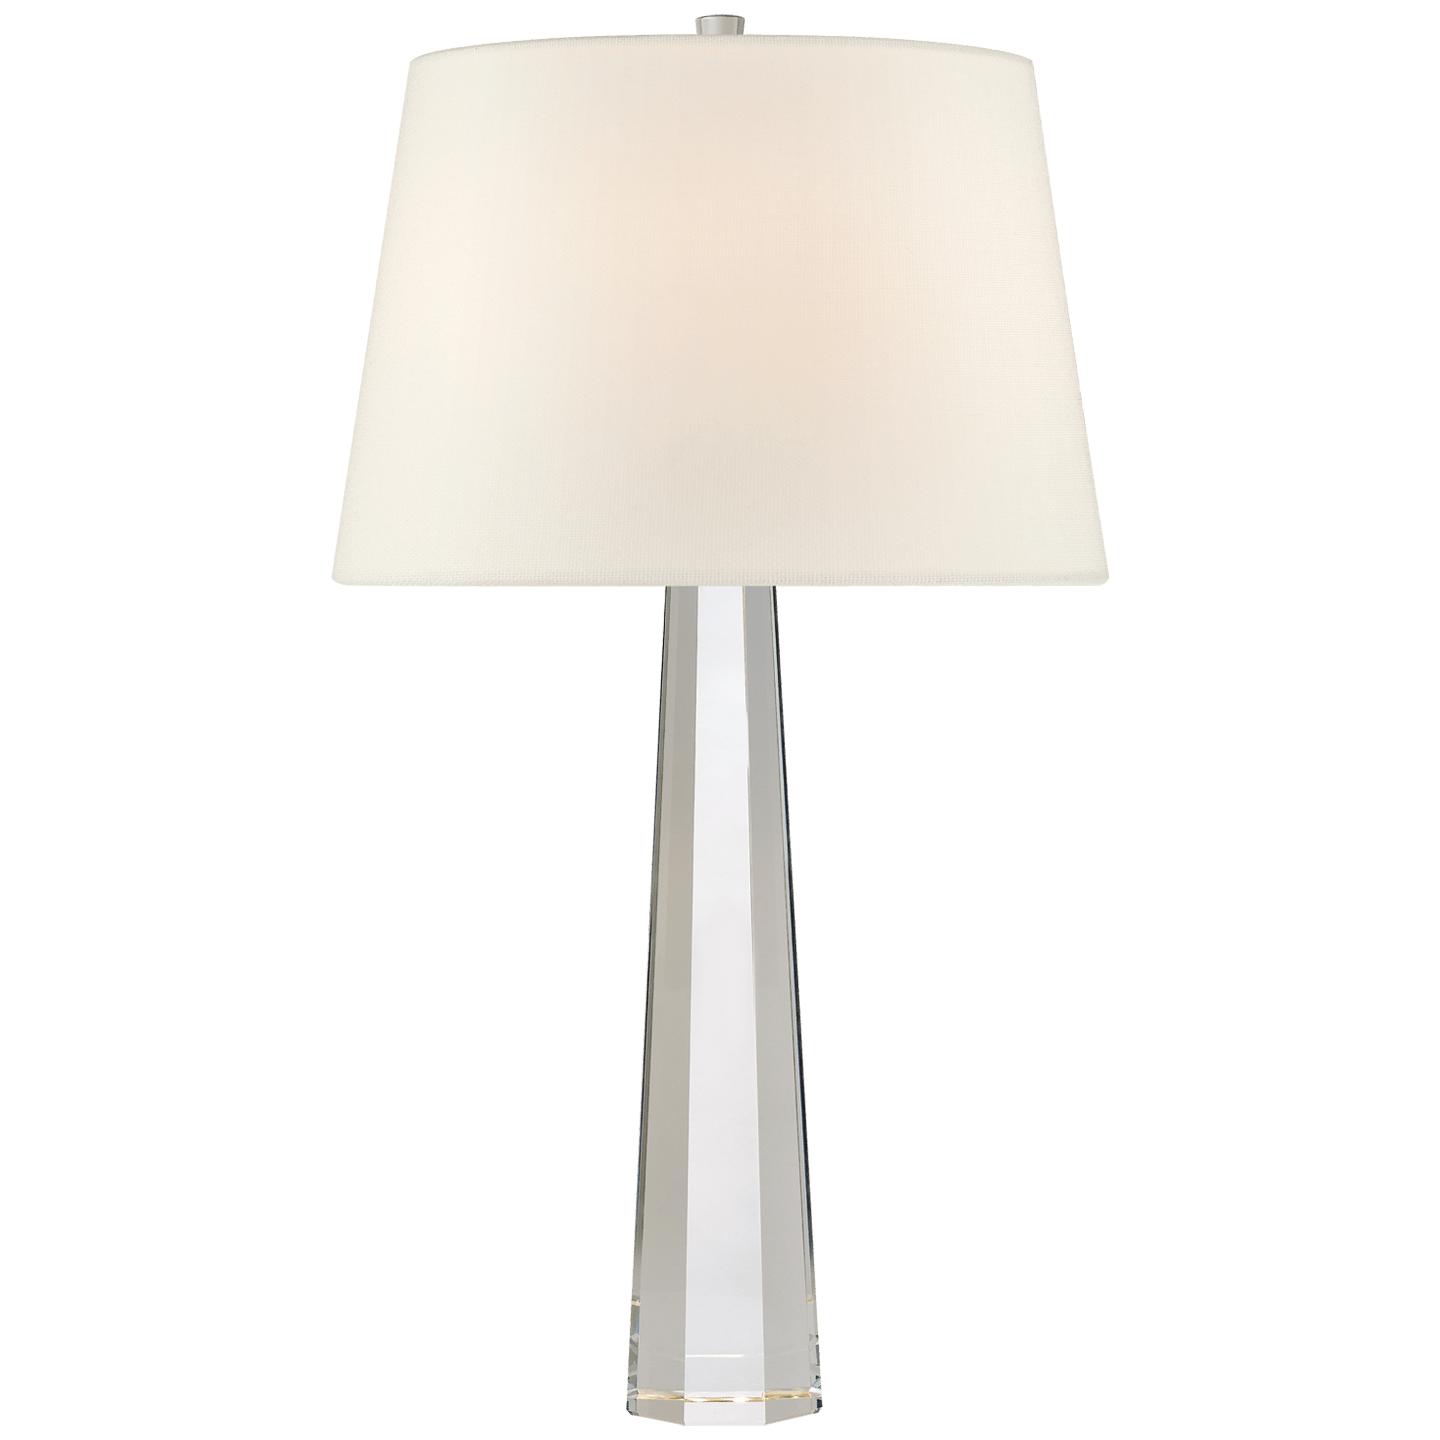 Купить Настольная лампа Octagonal Spire Medium Table Lamp в интернет-магазине roooms.ru